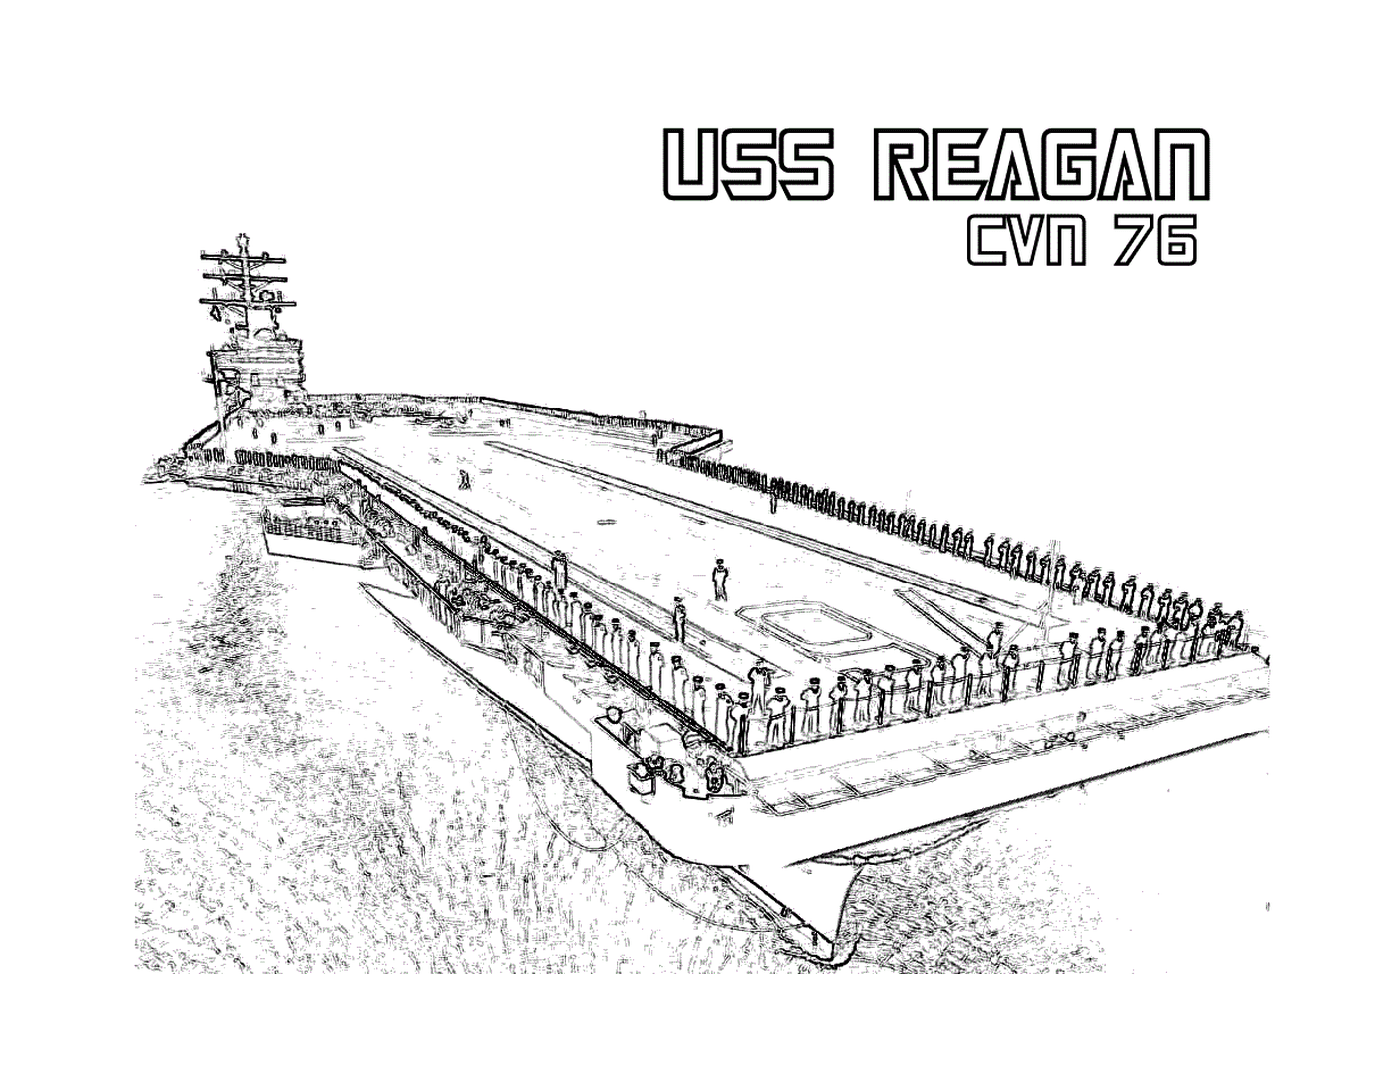  El USS Reagan CVN-70 